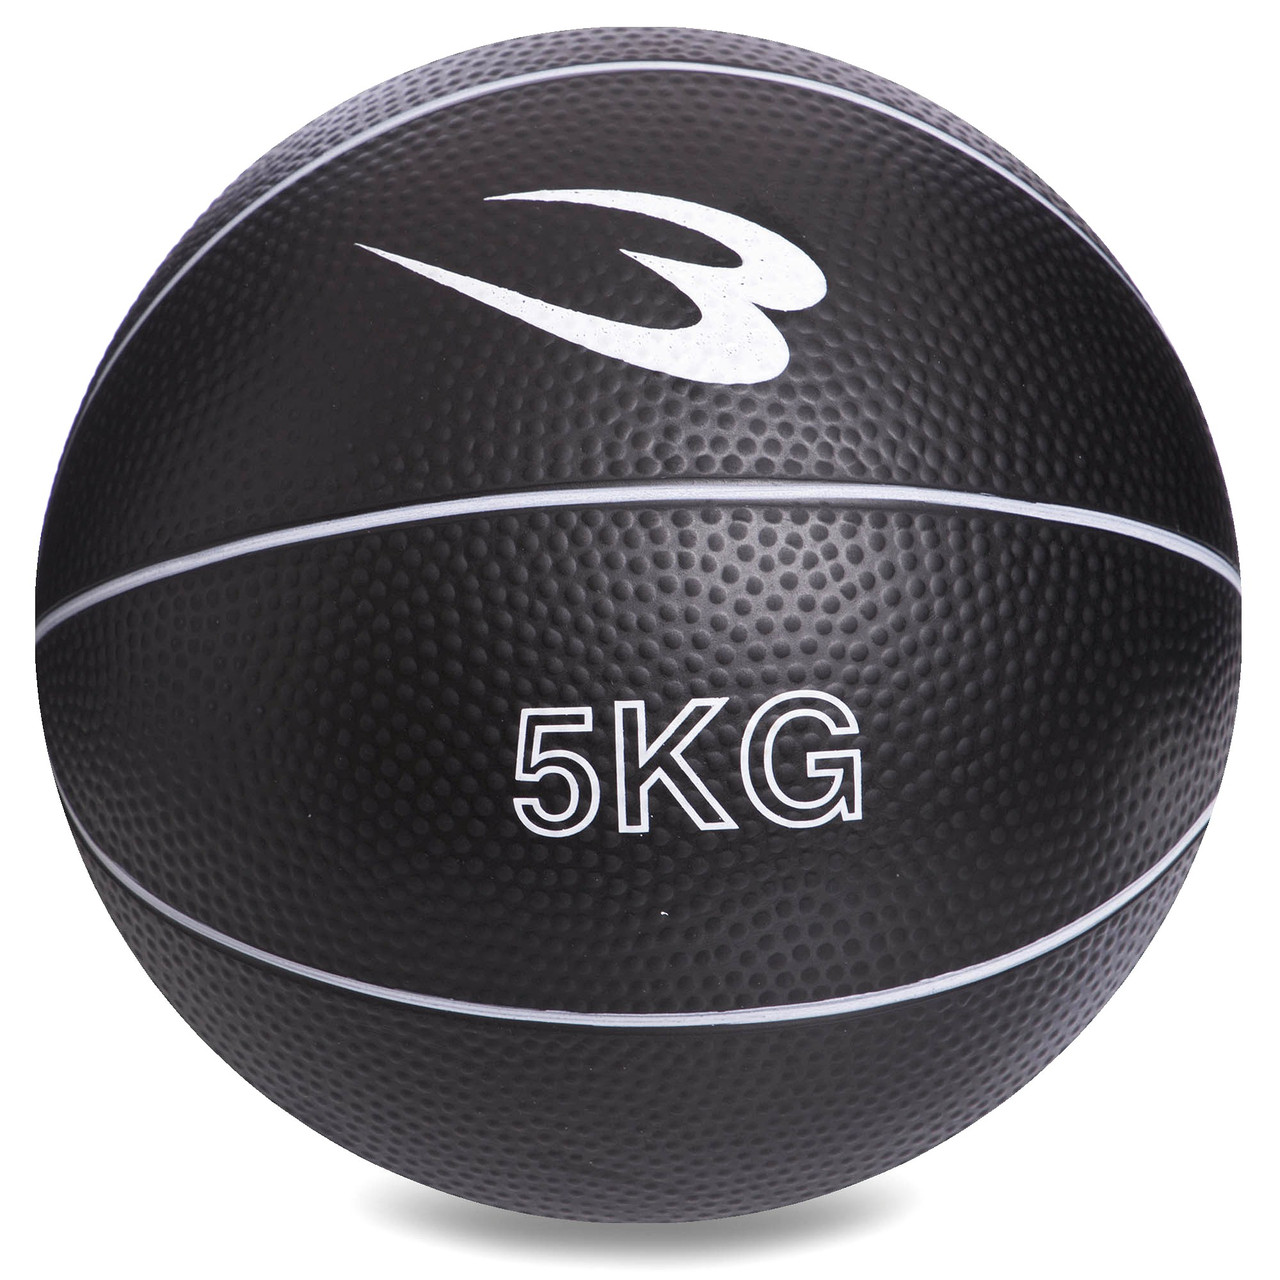 

Медбол утяжеленный медицинский мяч 5 кг для фитнеса кроссфита реабилитации SC-8407-5